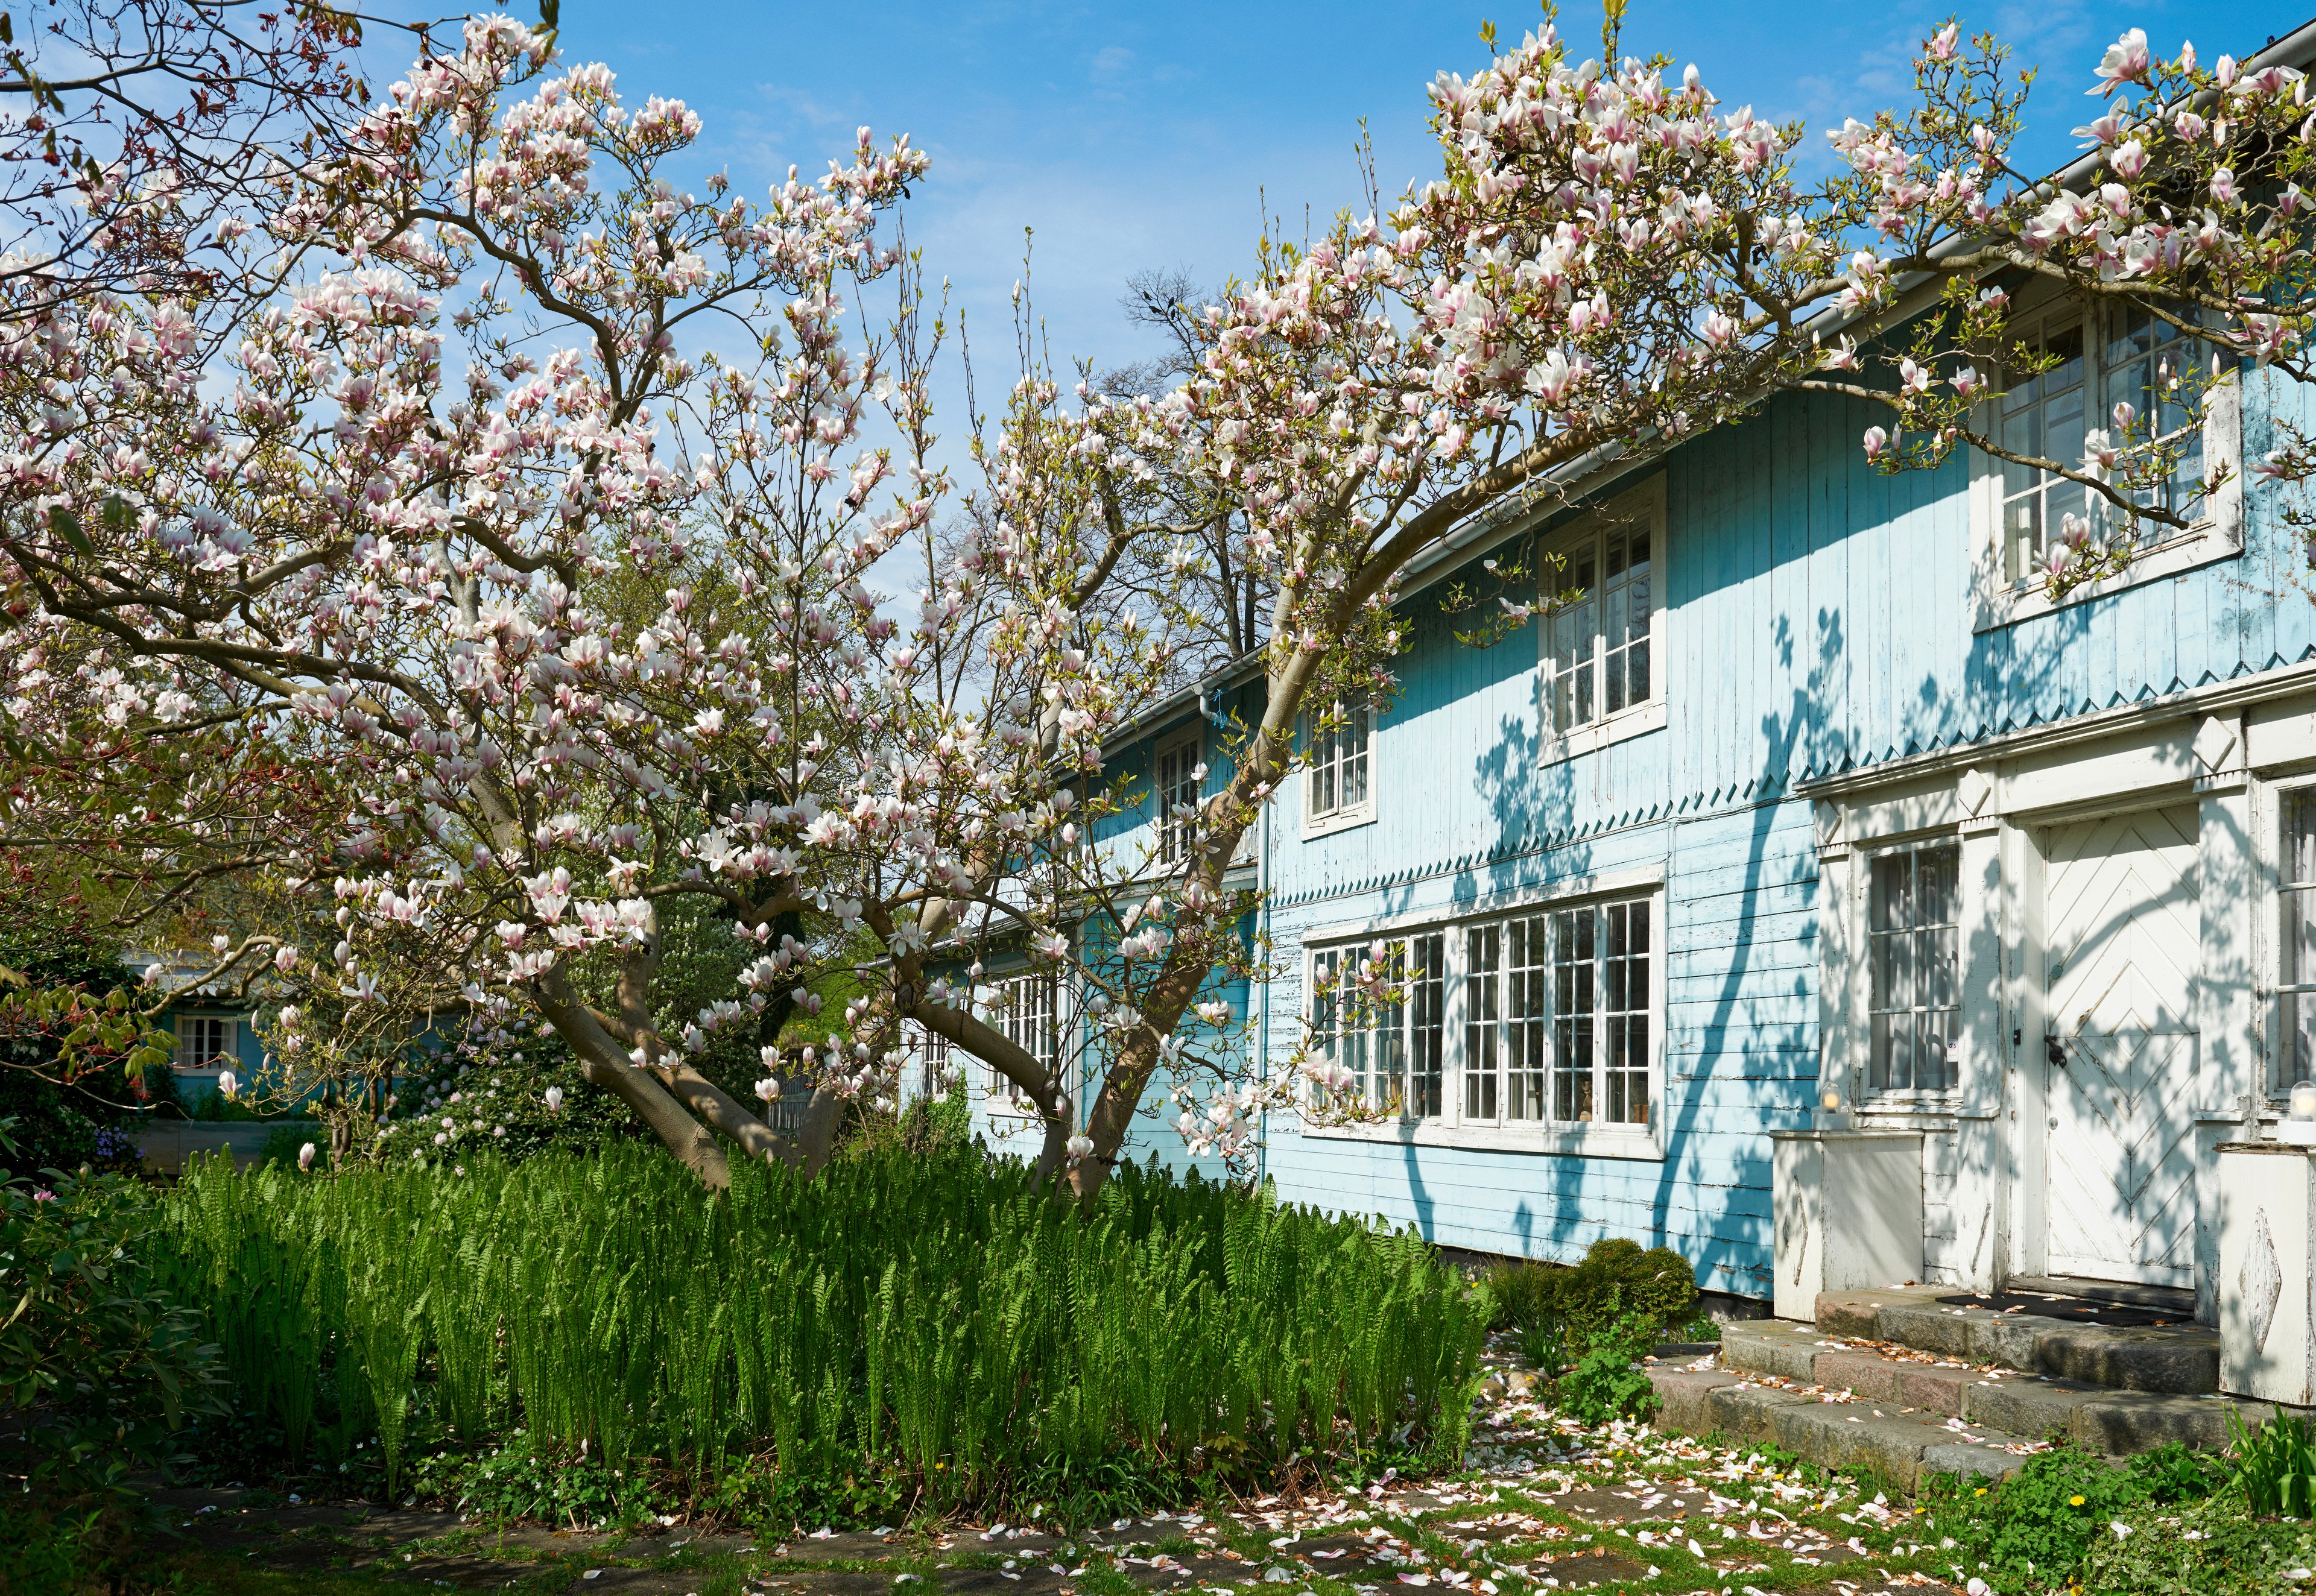 Det Blå Hus, Bjørn Wiinblads private bolig og atelier.